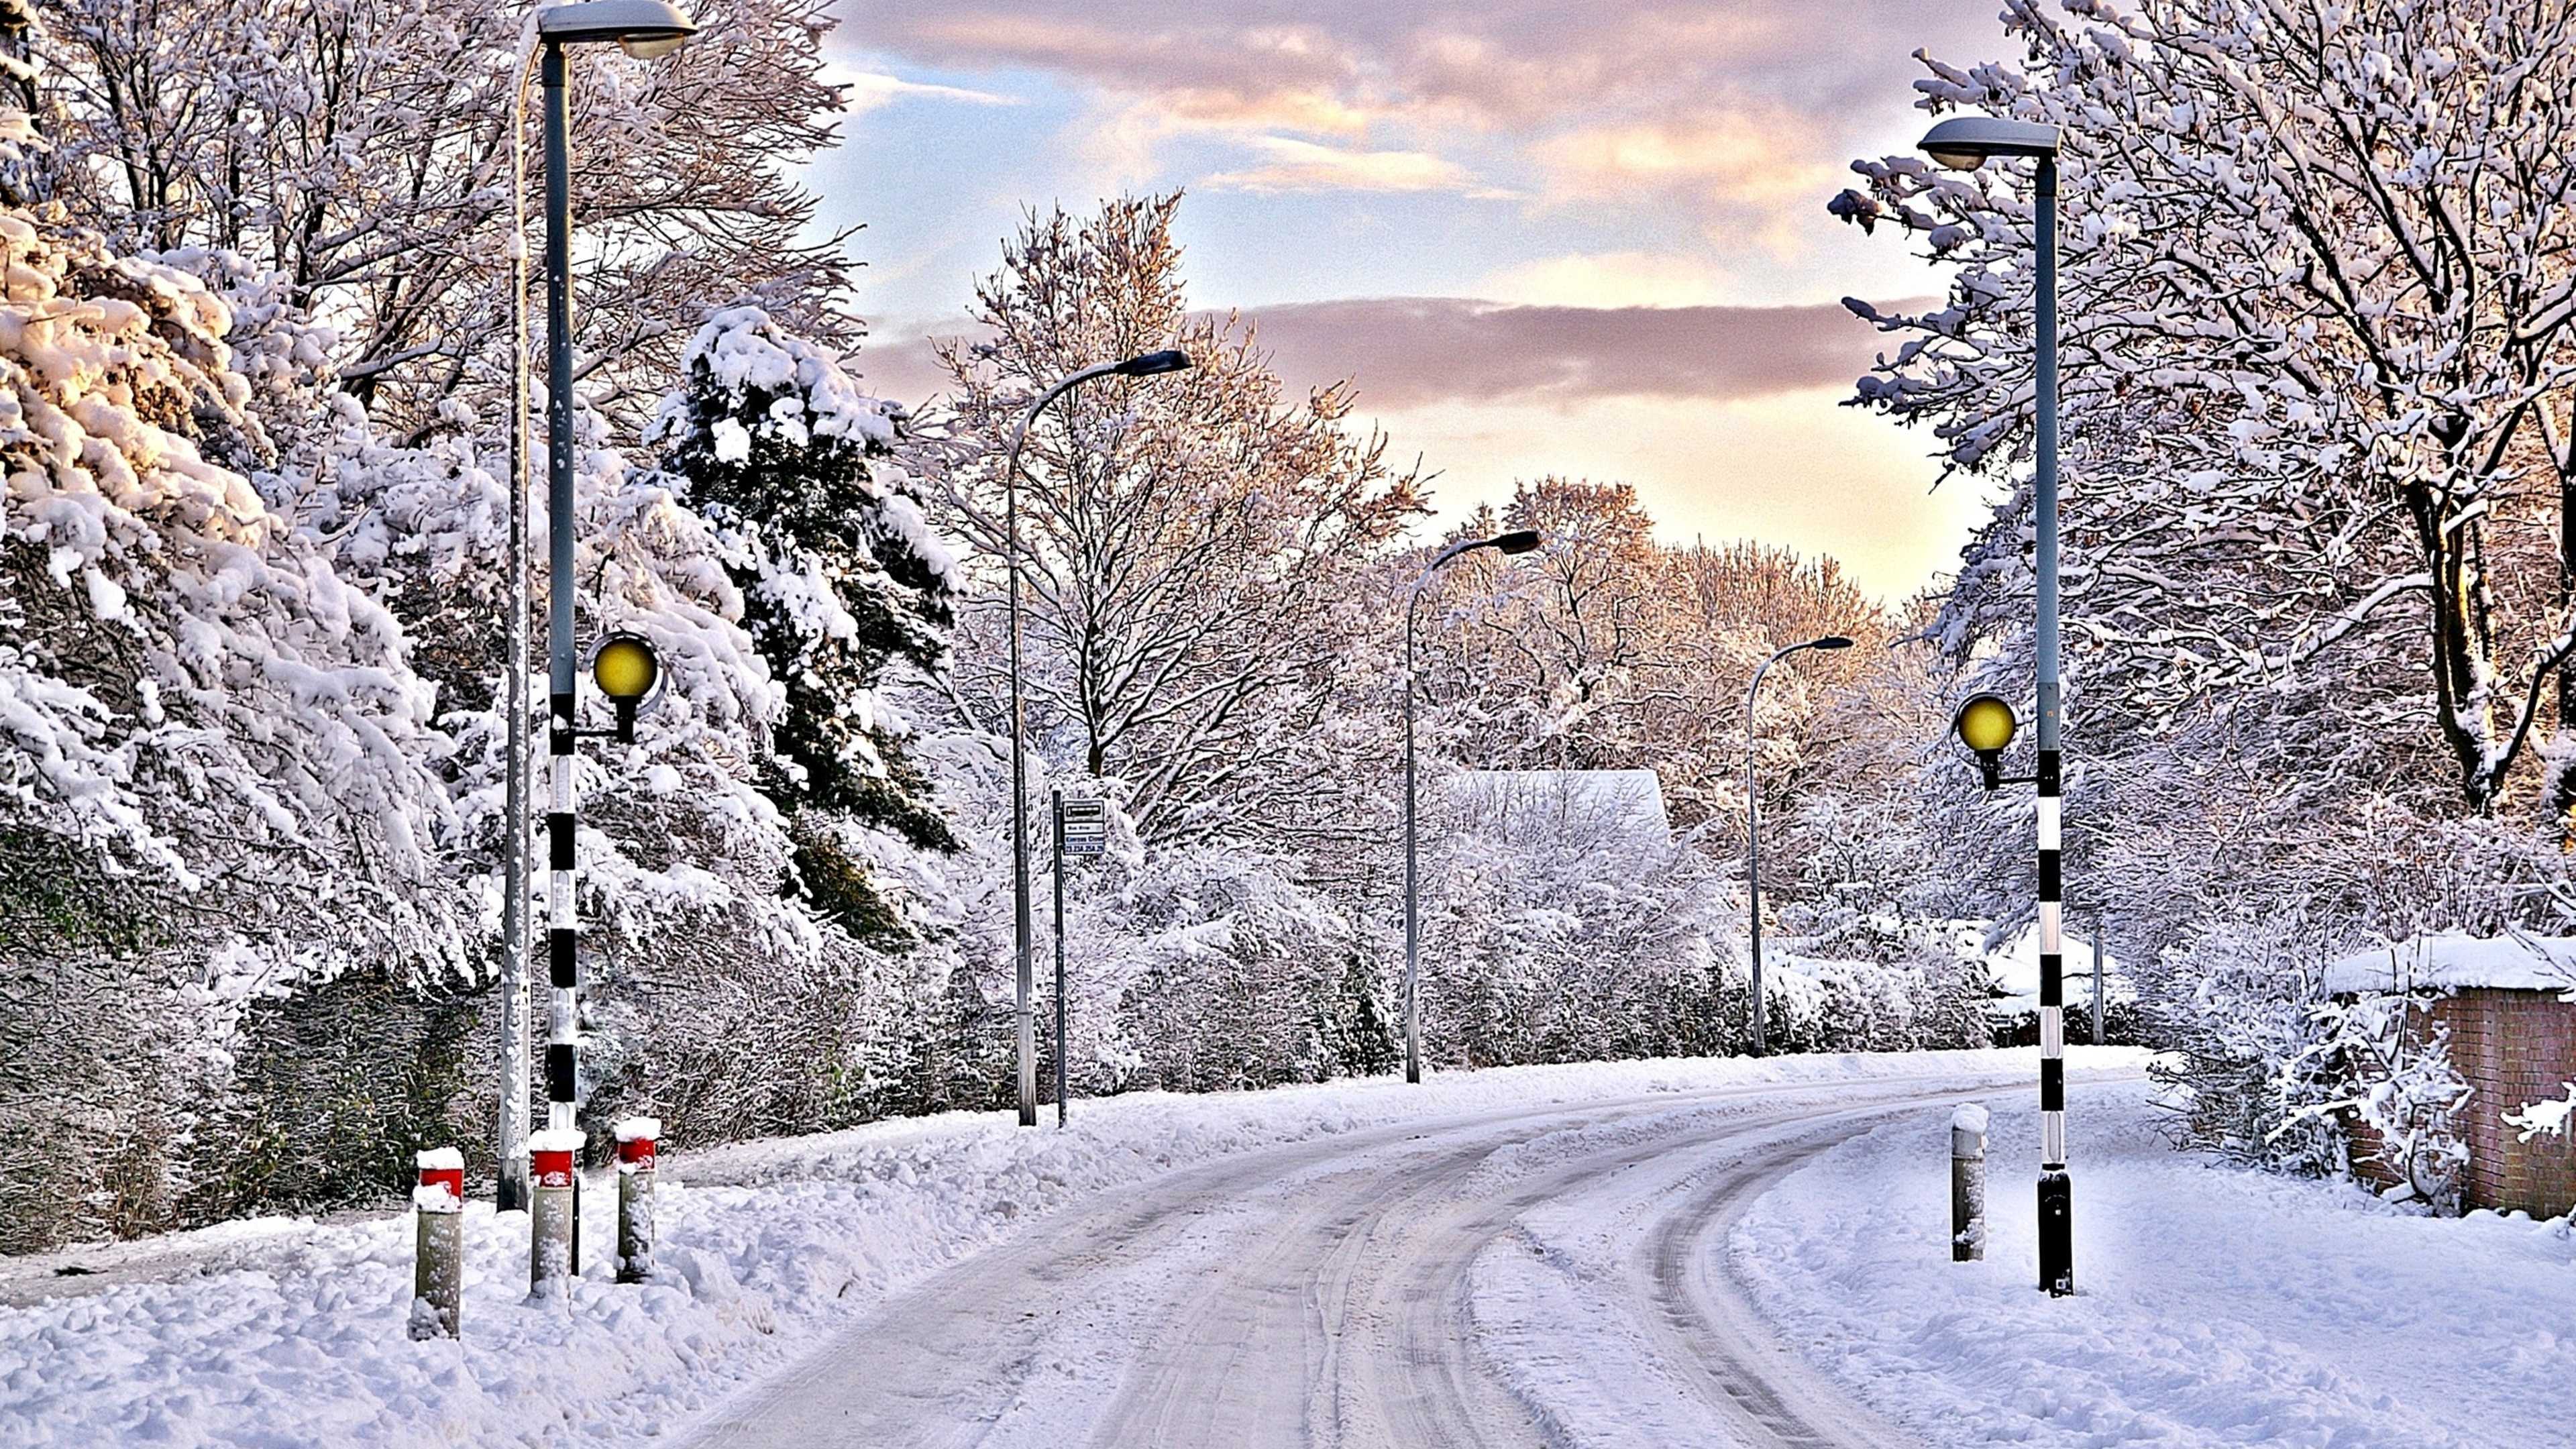 Скачать обои бесплатно Зима, Снег, Дорога, Дерево, Фотографии картинка на рабочий стол ПК